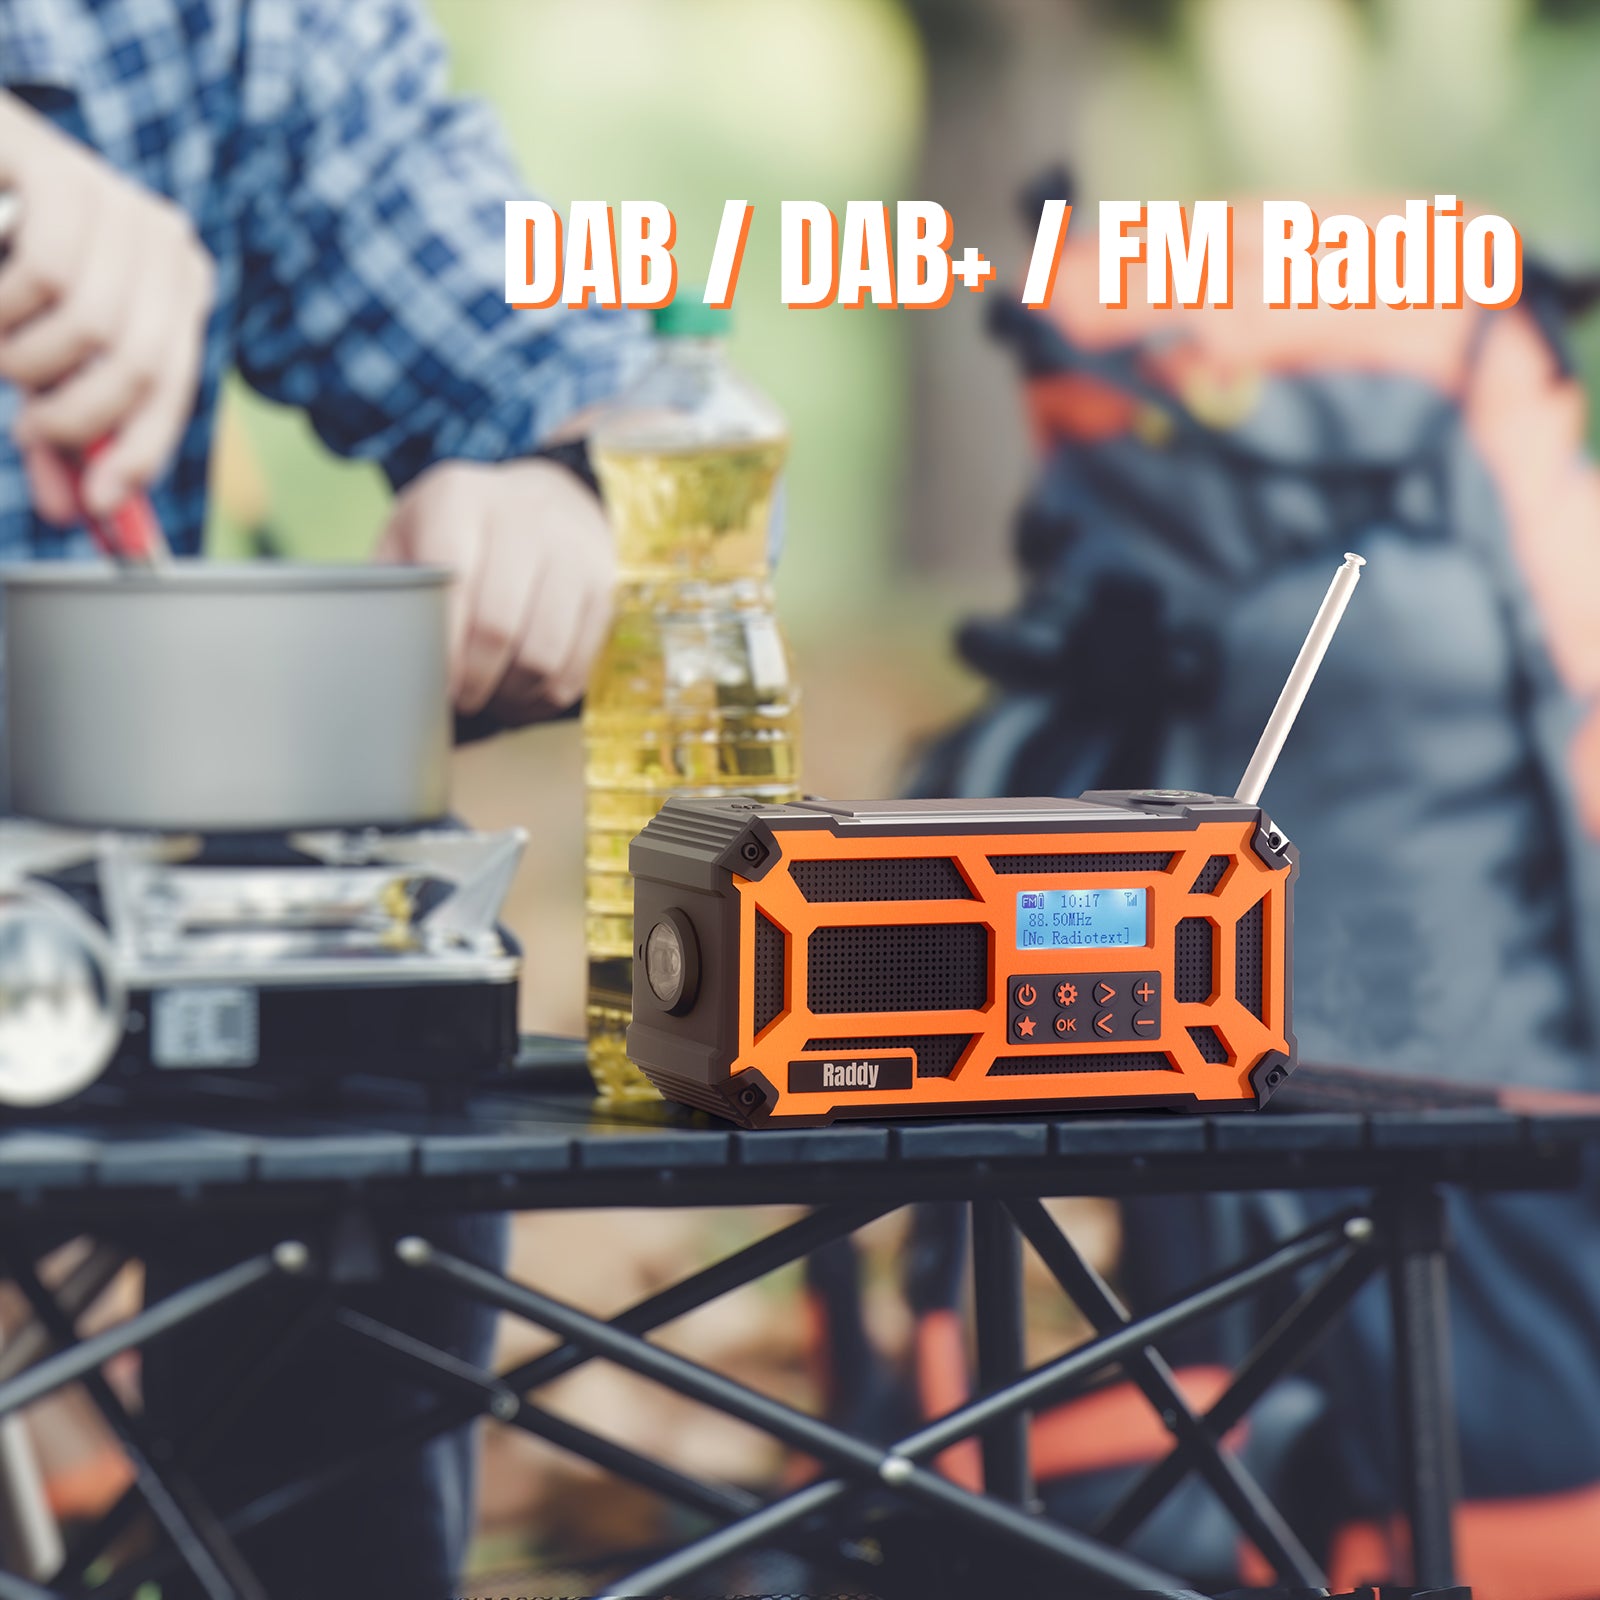 SD5 DAB/DAB+ Emergency Radio